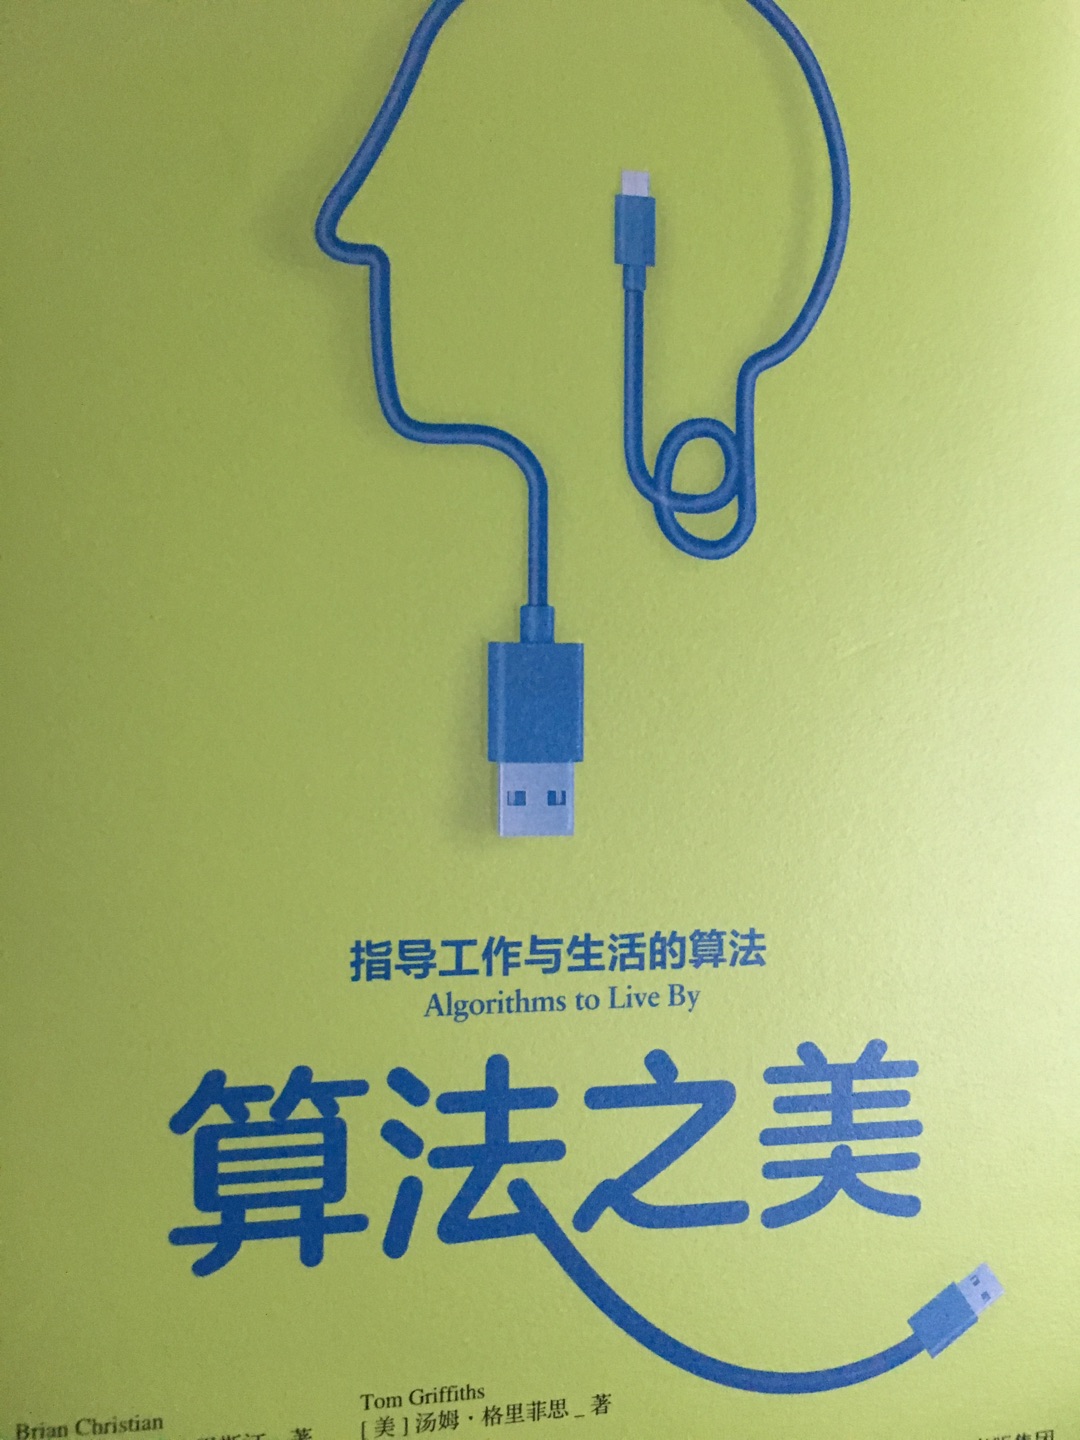 万维钢推荐的好书，终于出中文版了，指导生活工作要会点算法。